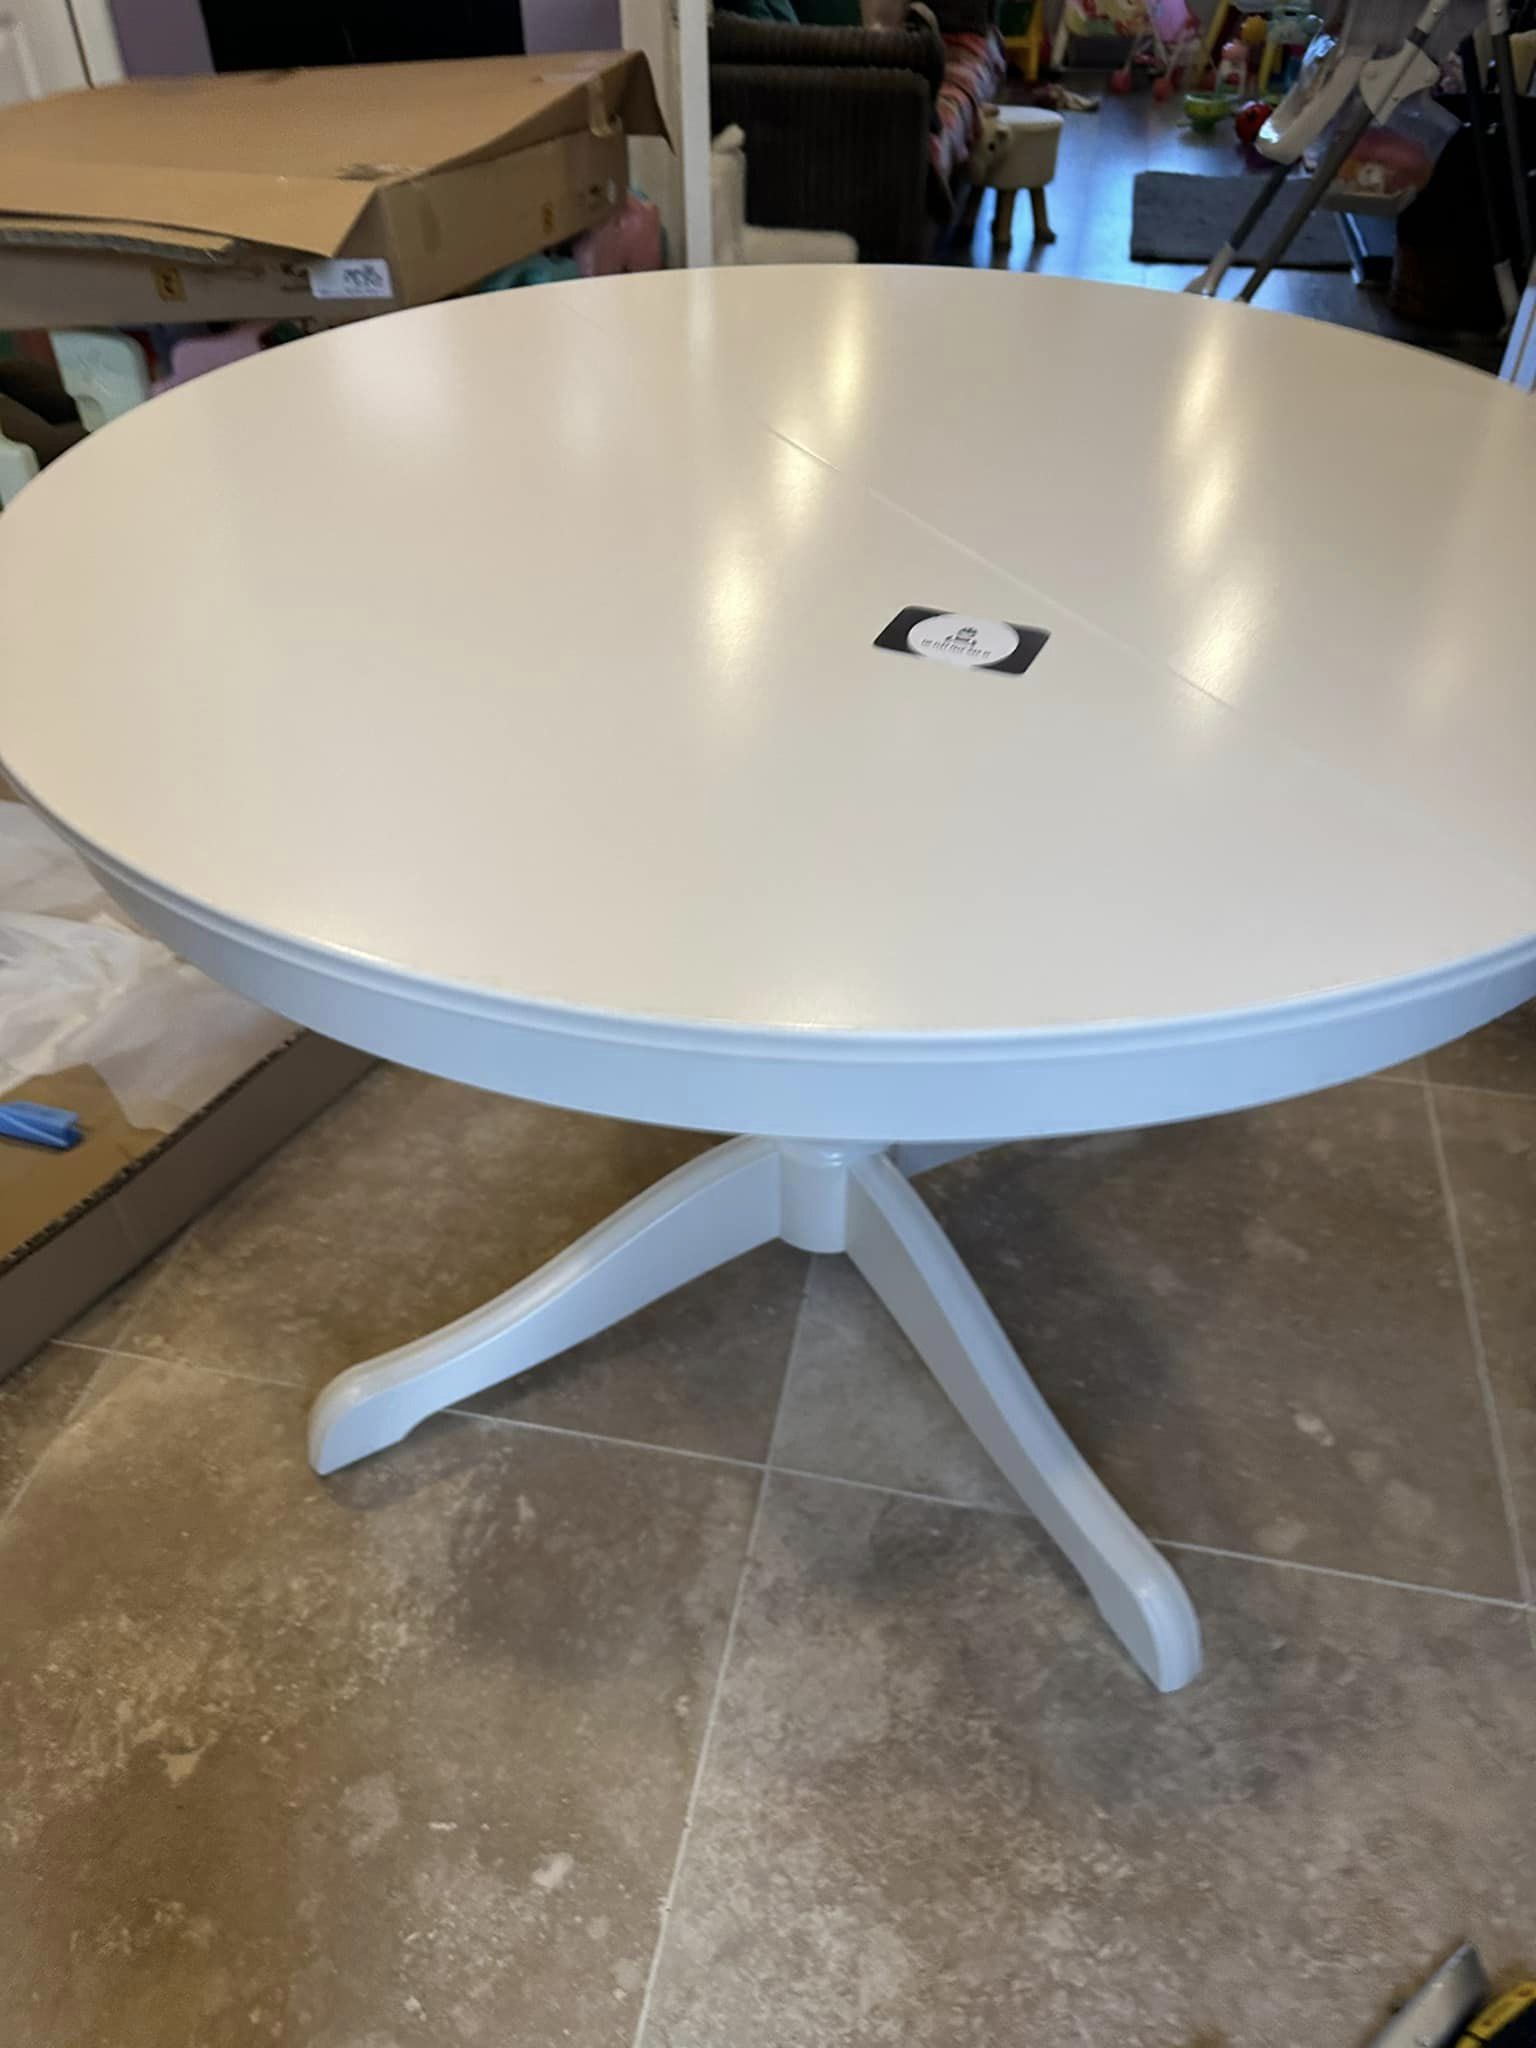 White round table